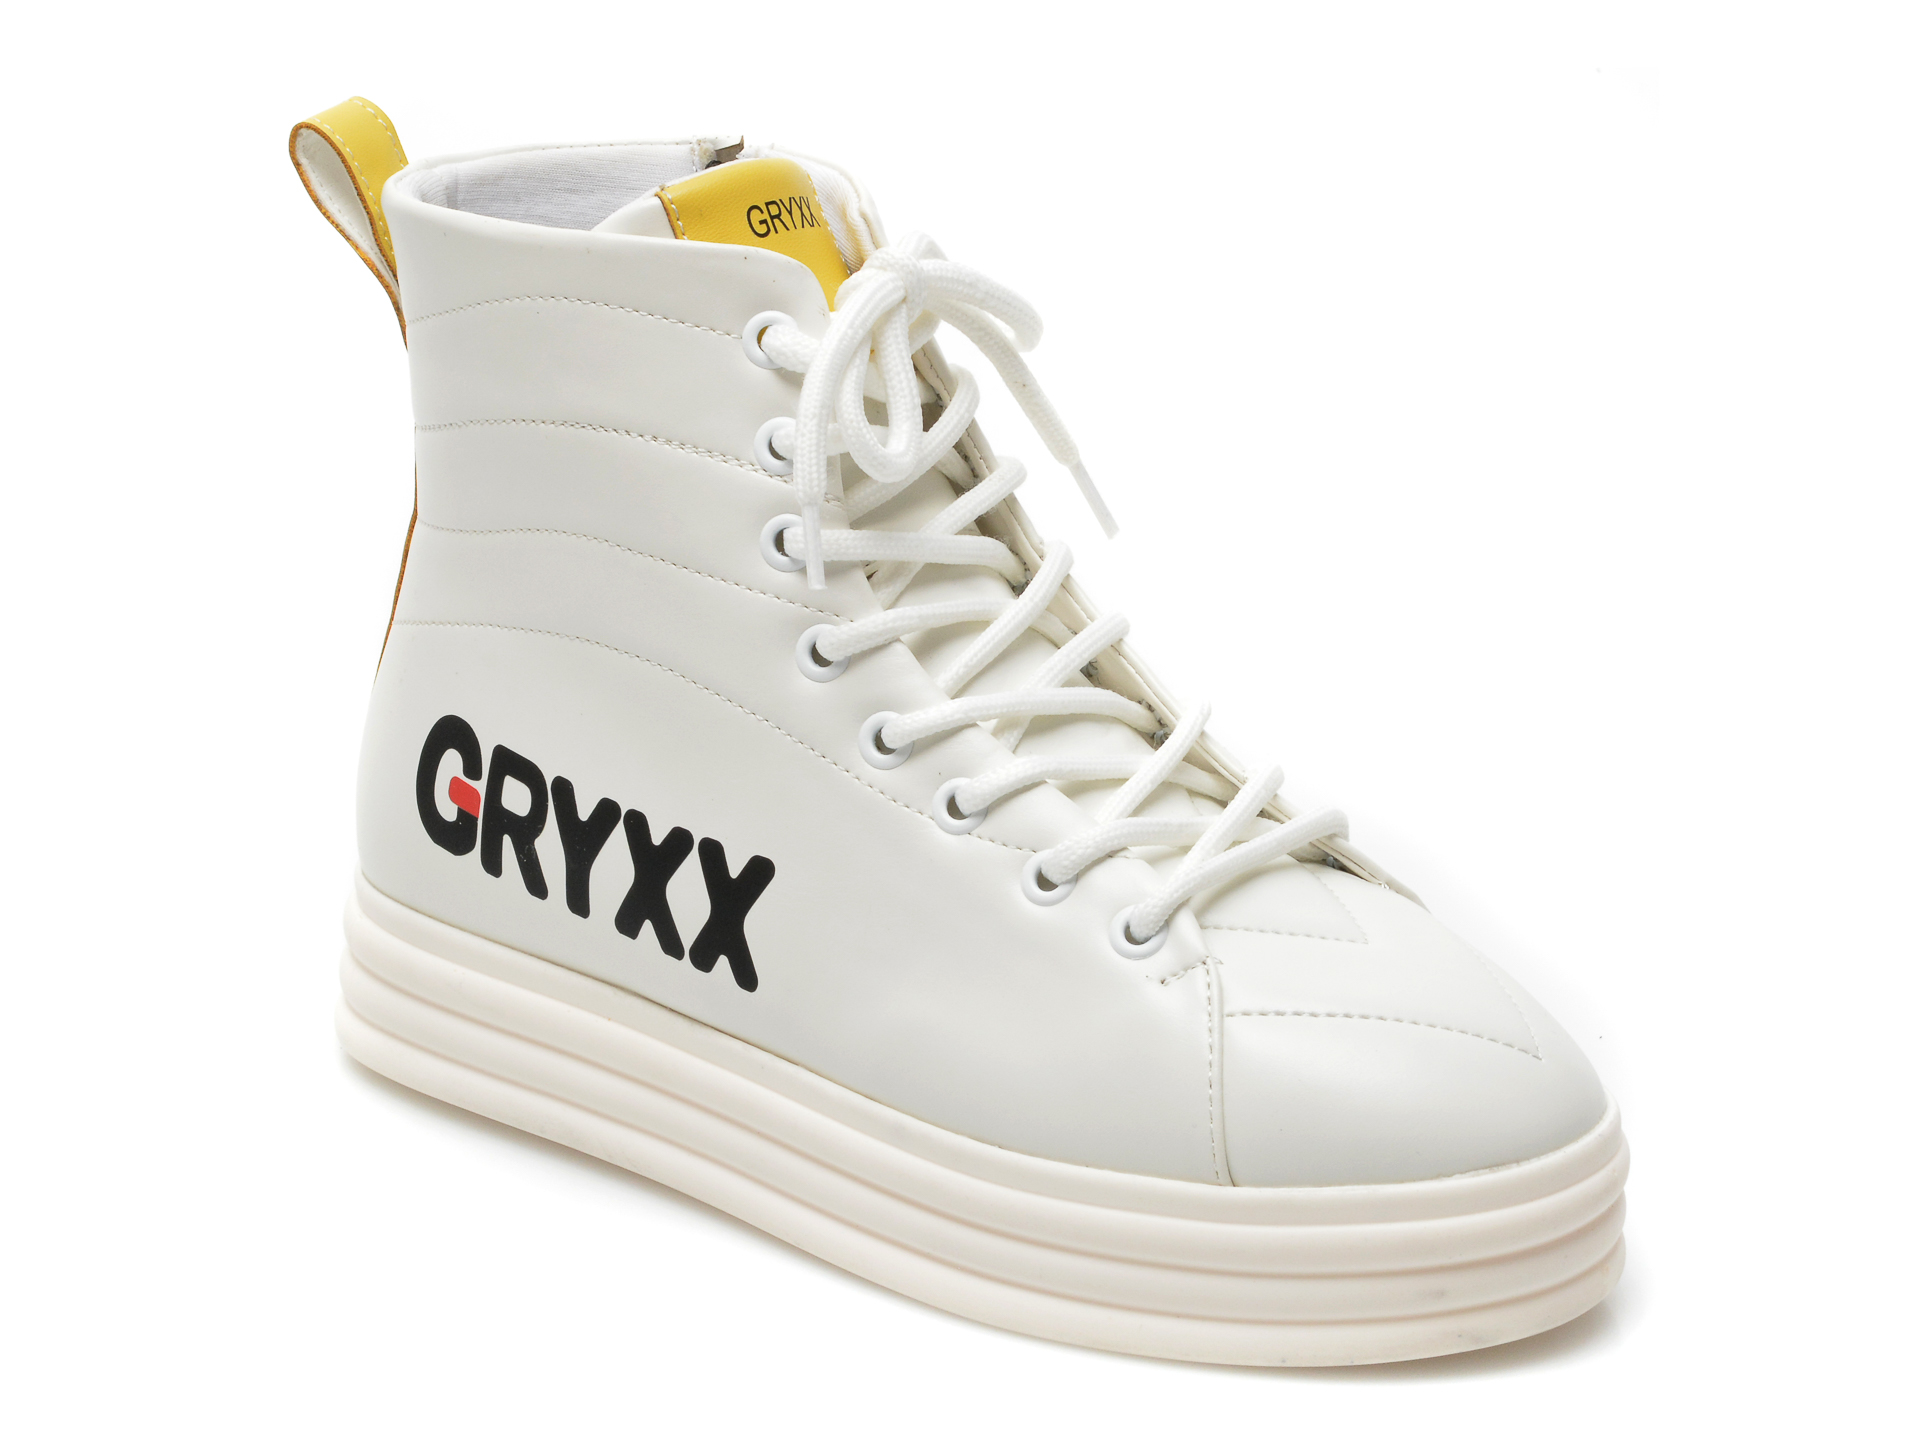 Ghete GRYXX albe, P9B2, din piele ecologica Gryxx